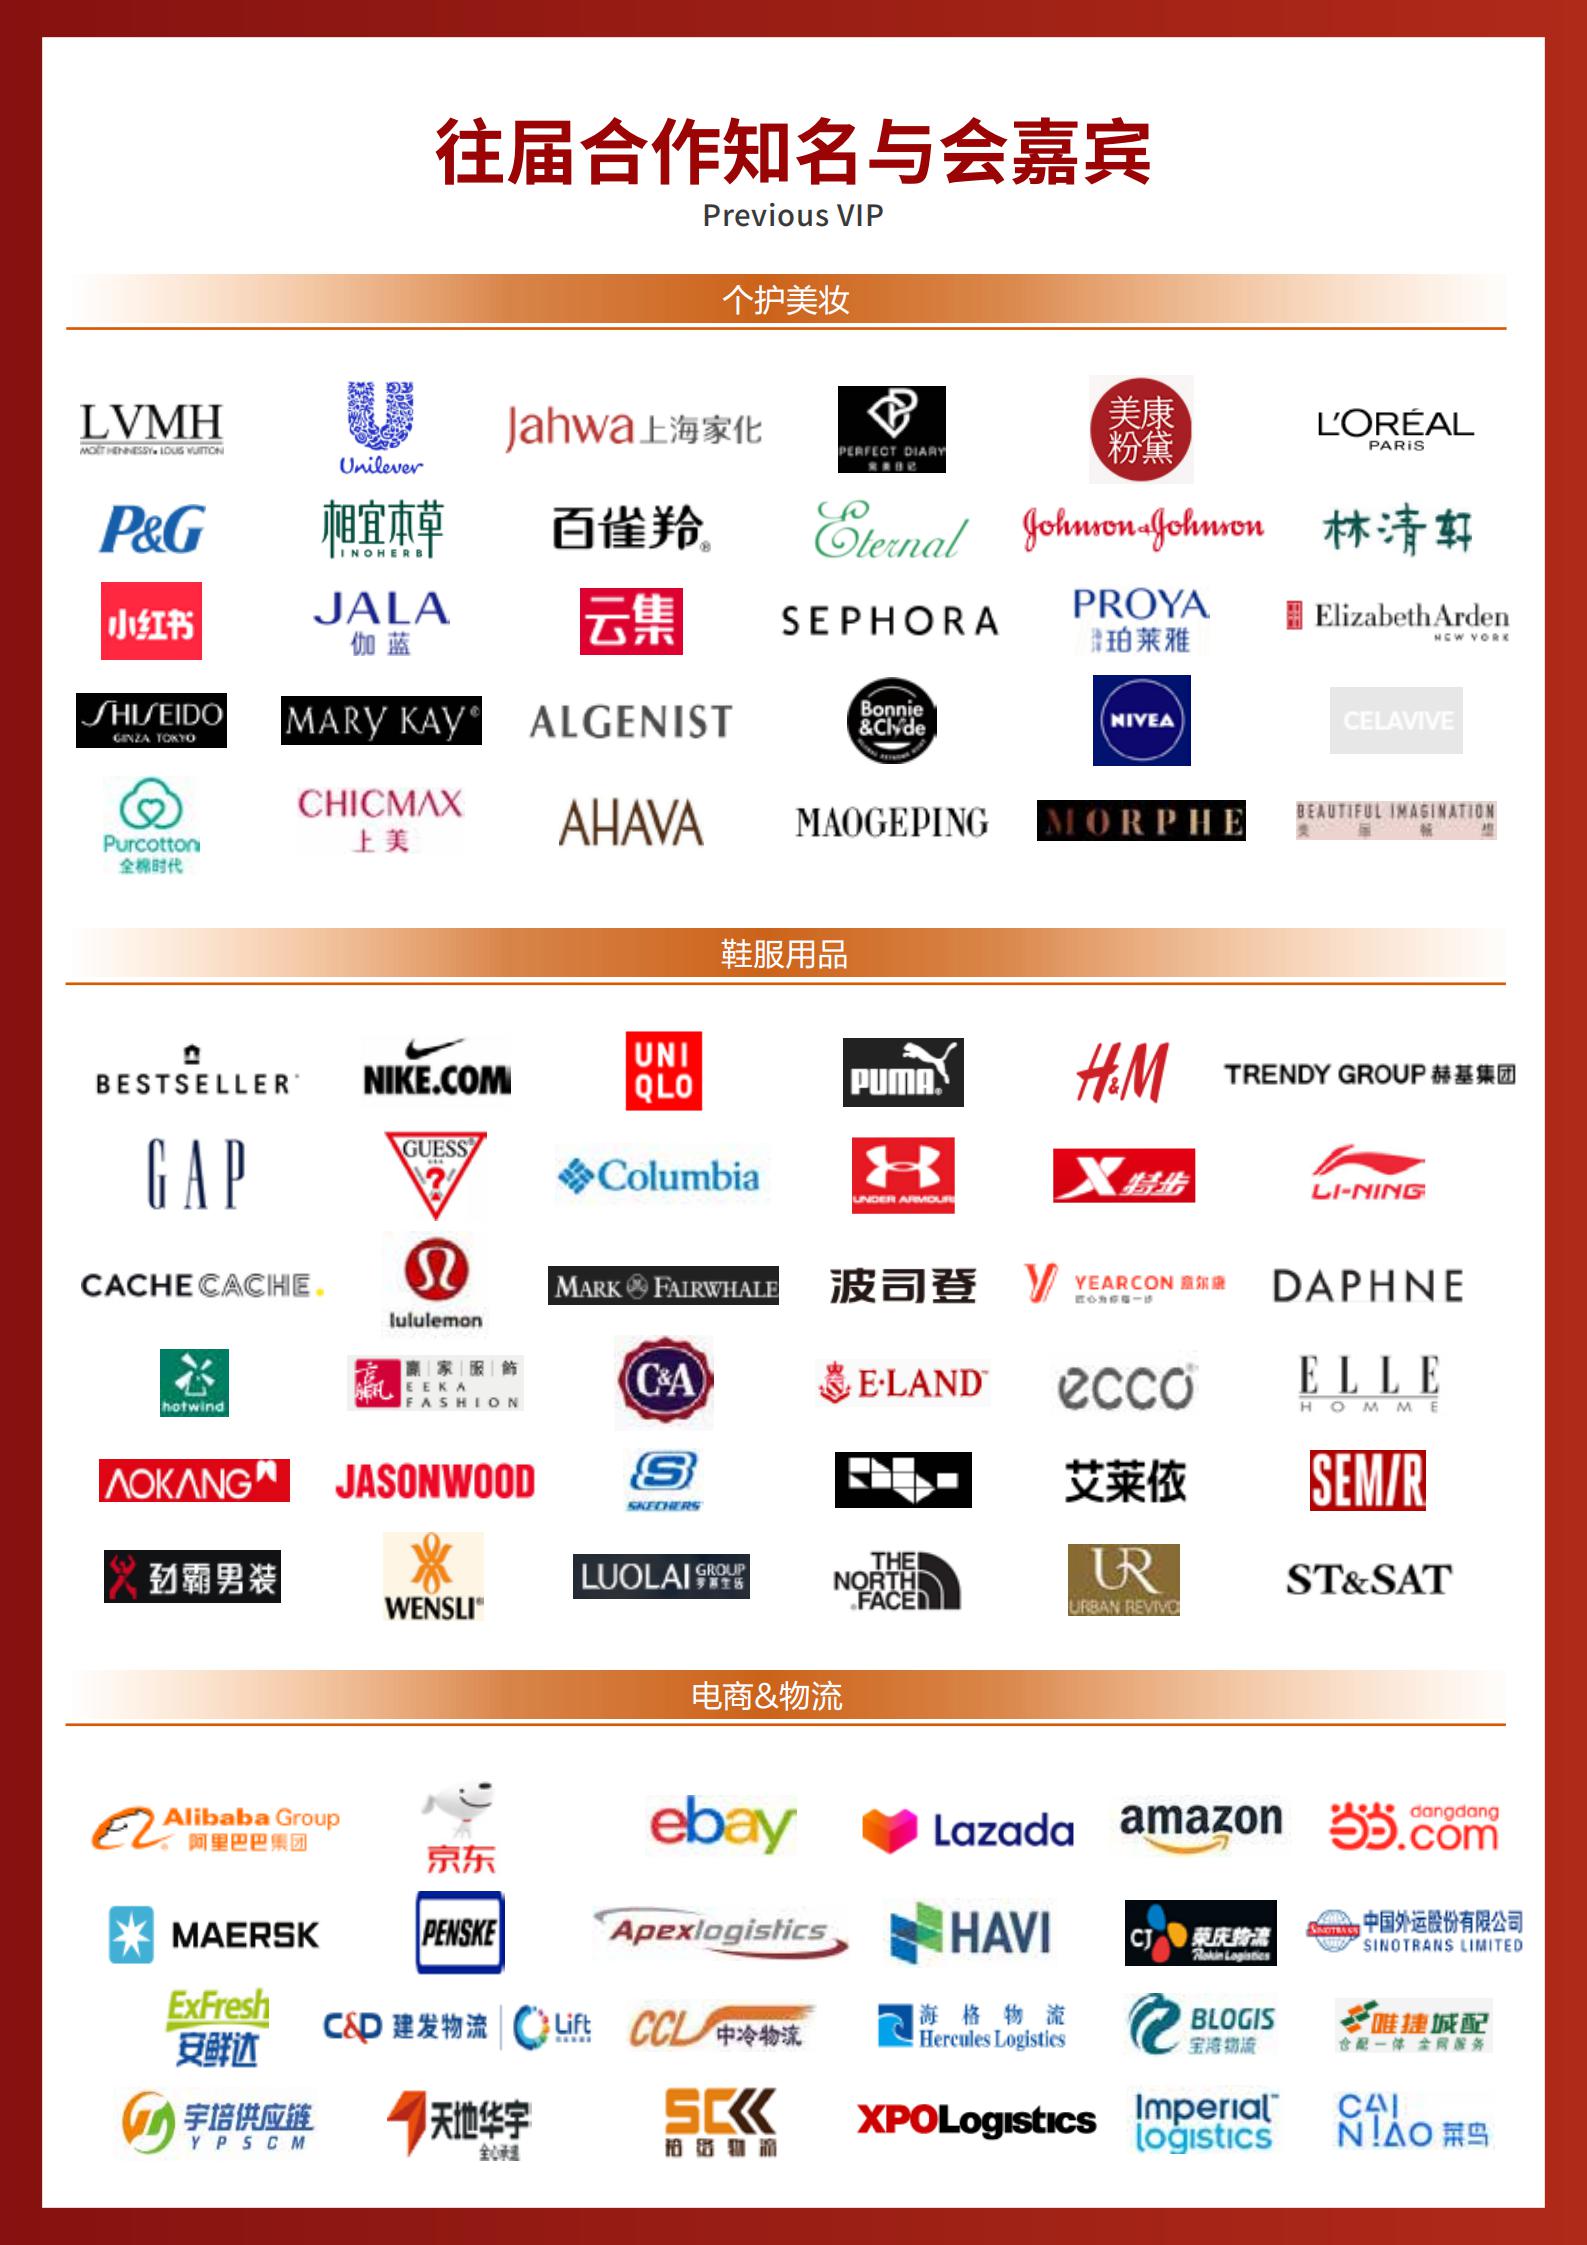 2021（第五届）中国零售供应链与物流峰会 · 鞋服·个护·美妆专题